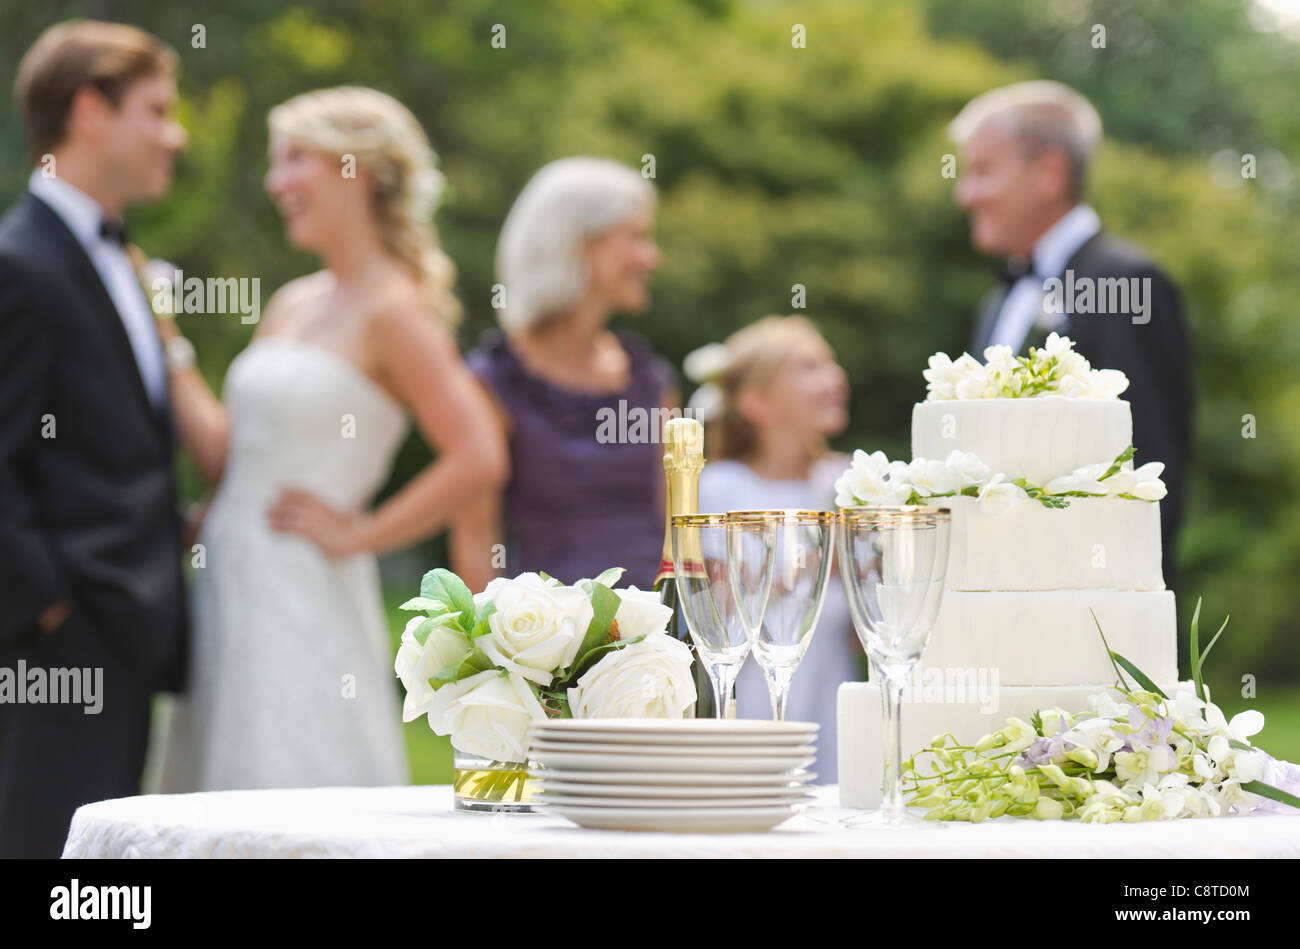 USA, New York State, Old Westbury, Hochzeitstafel mit Champagner und Kuchen, Menschen im Hintergrund Stockfoto